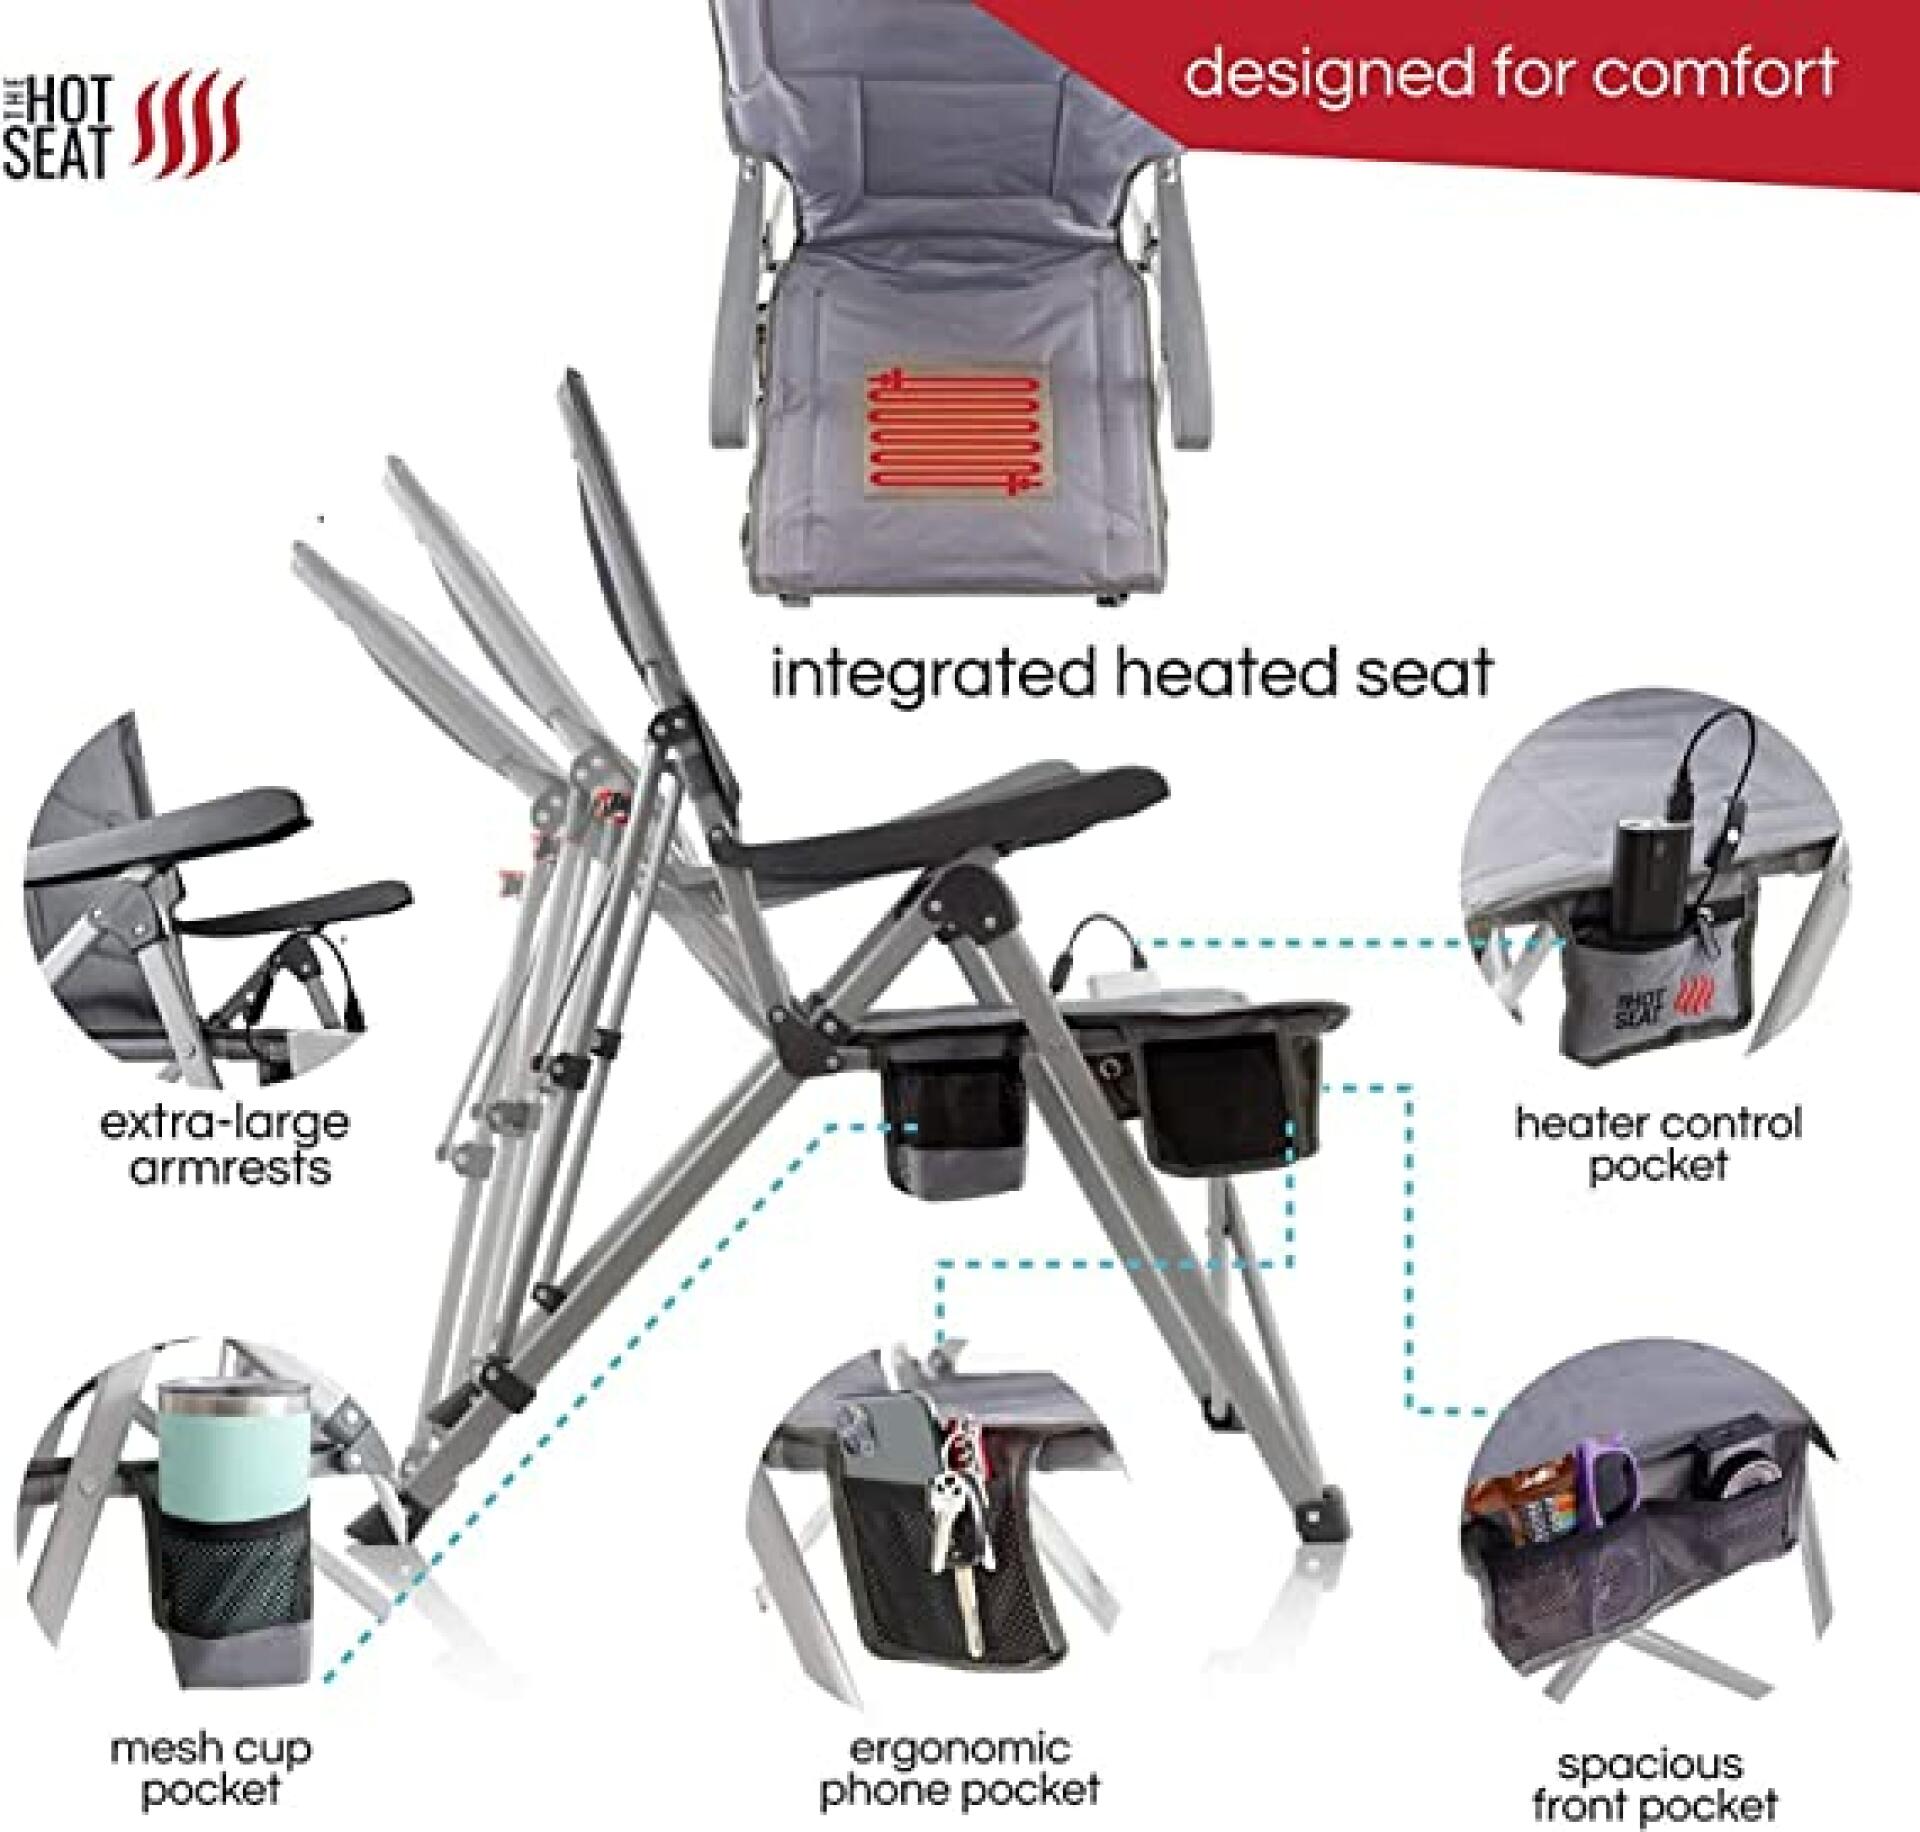 Hot seat verwarmde draagbare stoel aOxfJBaR